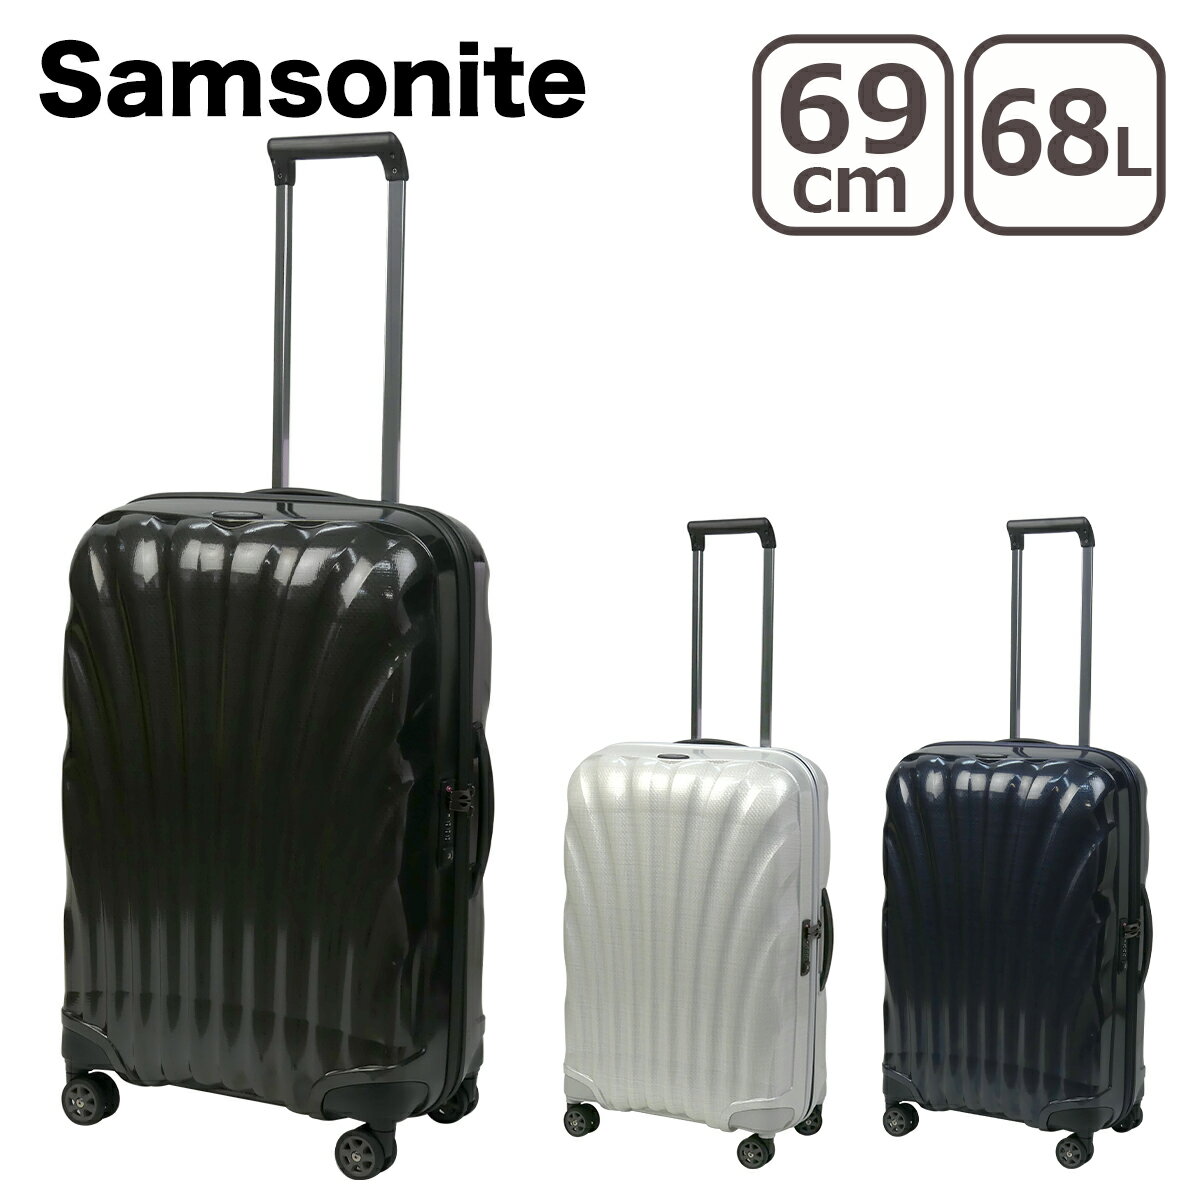 【ポイント5倍 6/1】サムソナイト Samsonite C-Lite Spinner 69 シーライト スピナー 69cm 68L スーツケース 軽量 キャリーケース 4輪